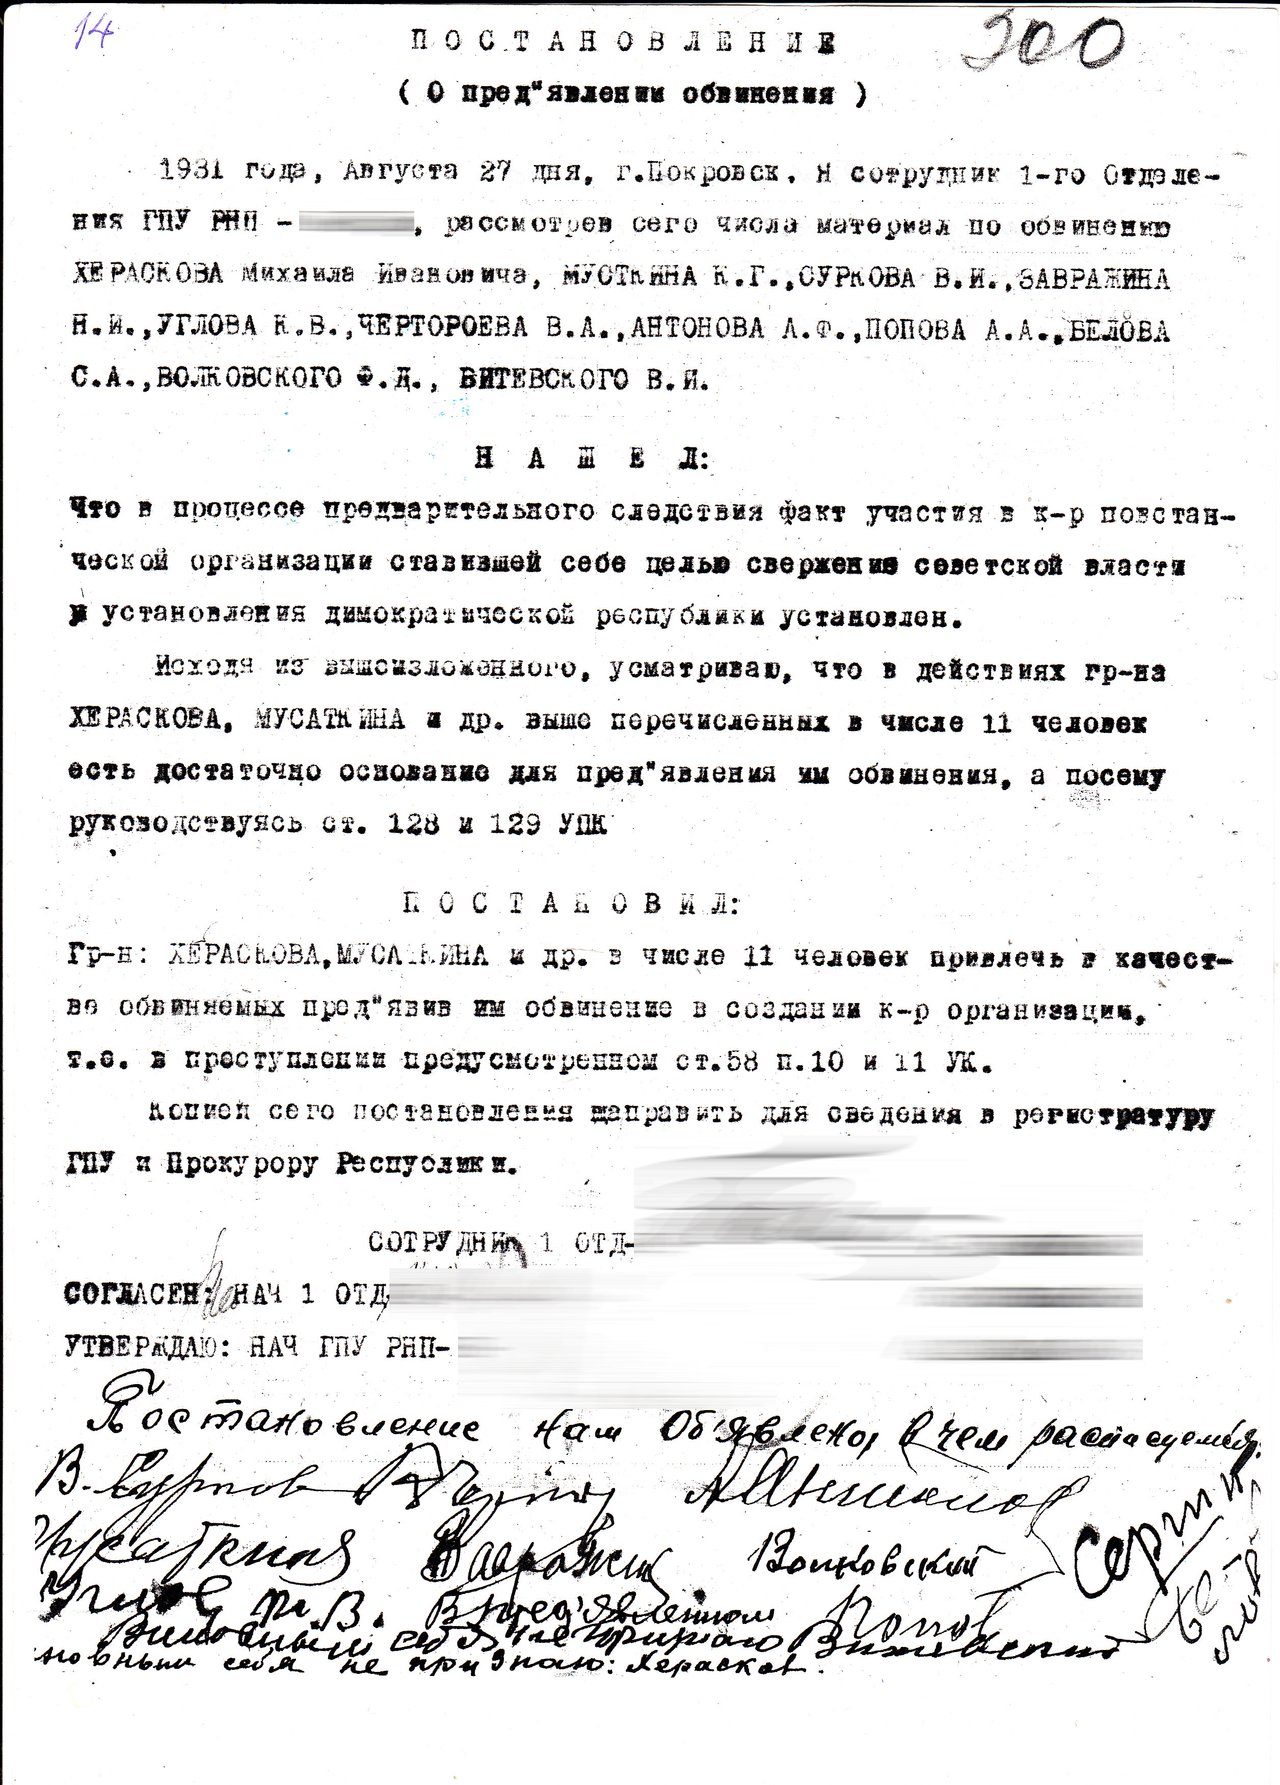 Л. 300 Постановление о предъявлении обвинения, 27.08.1931 г.